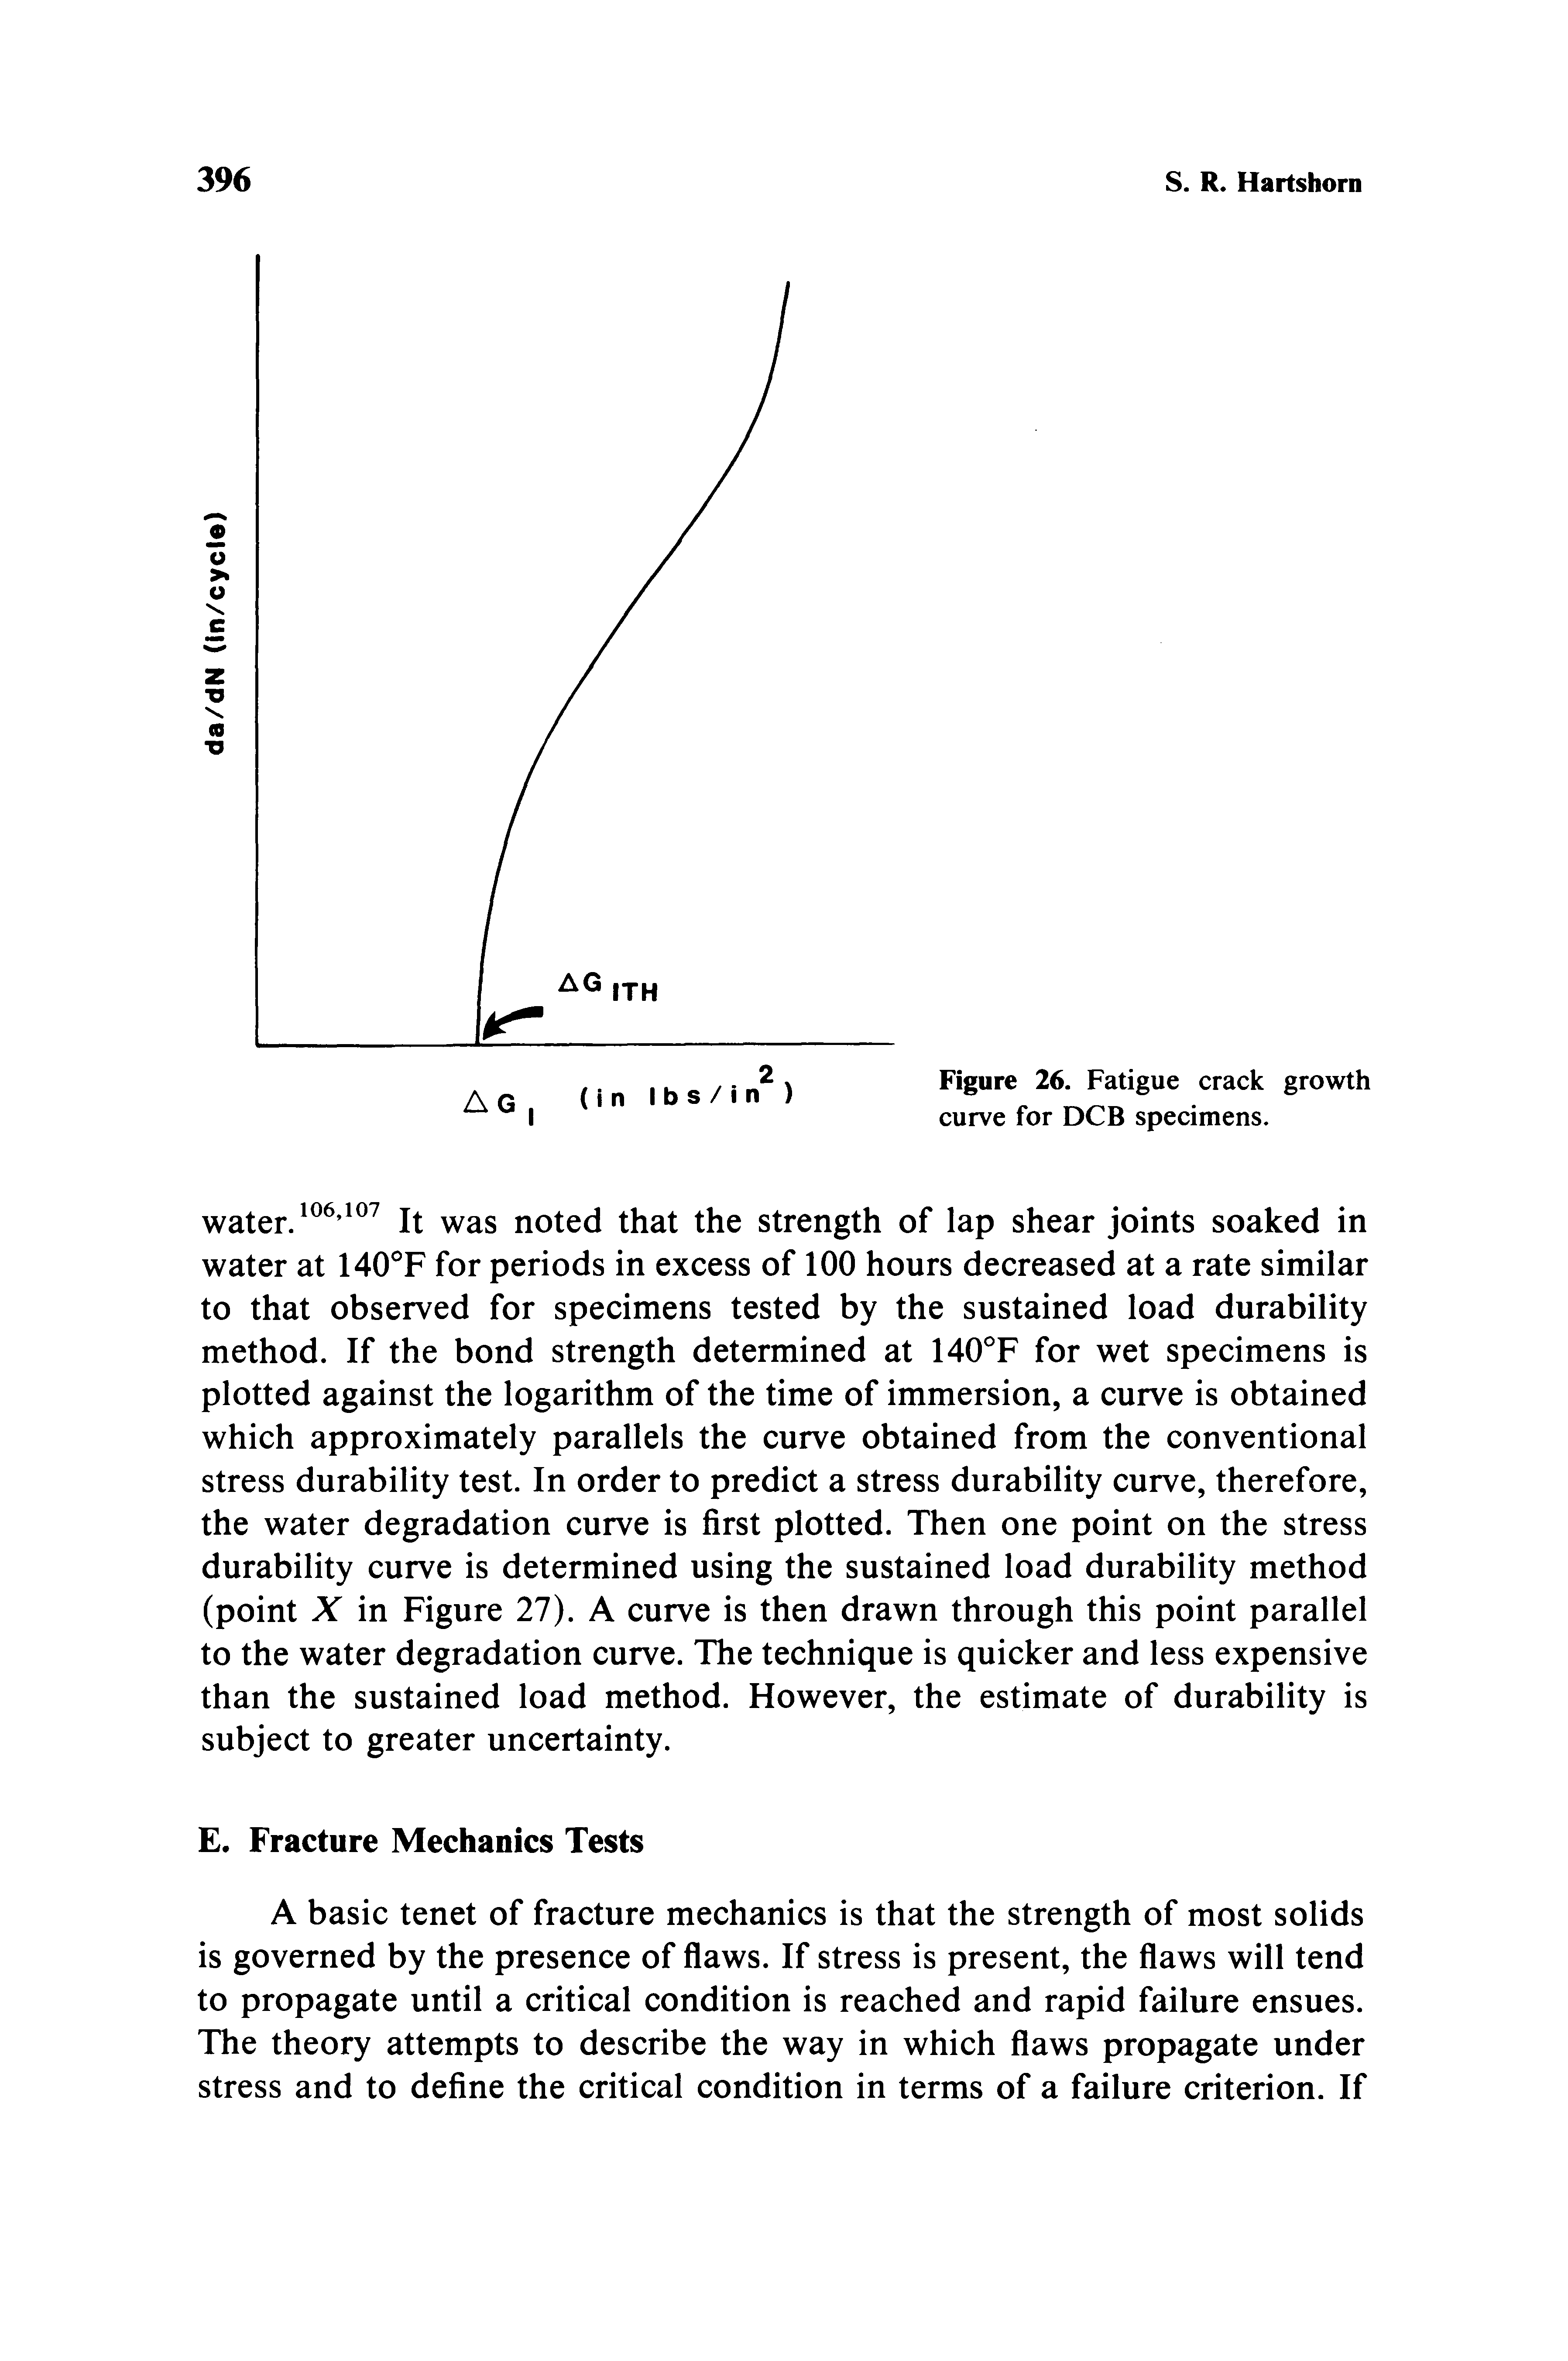 Figure 26. Fatigue crack growth curve for DCB specimens.